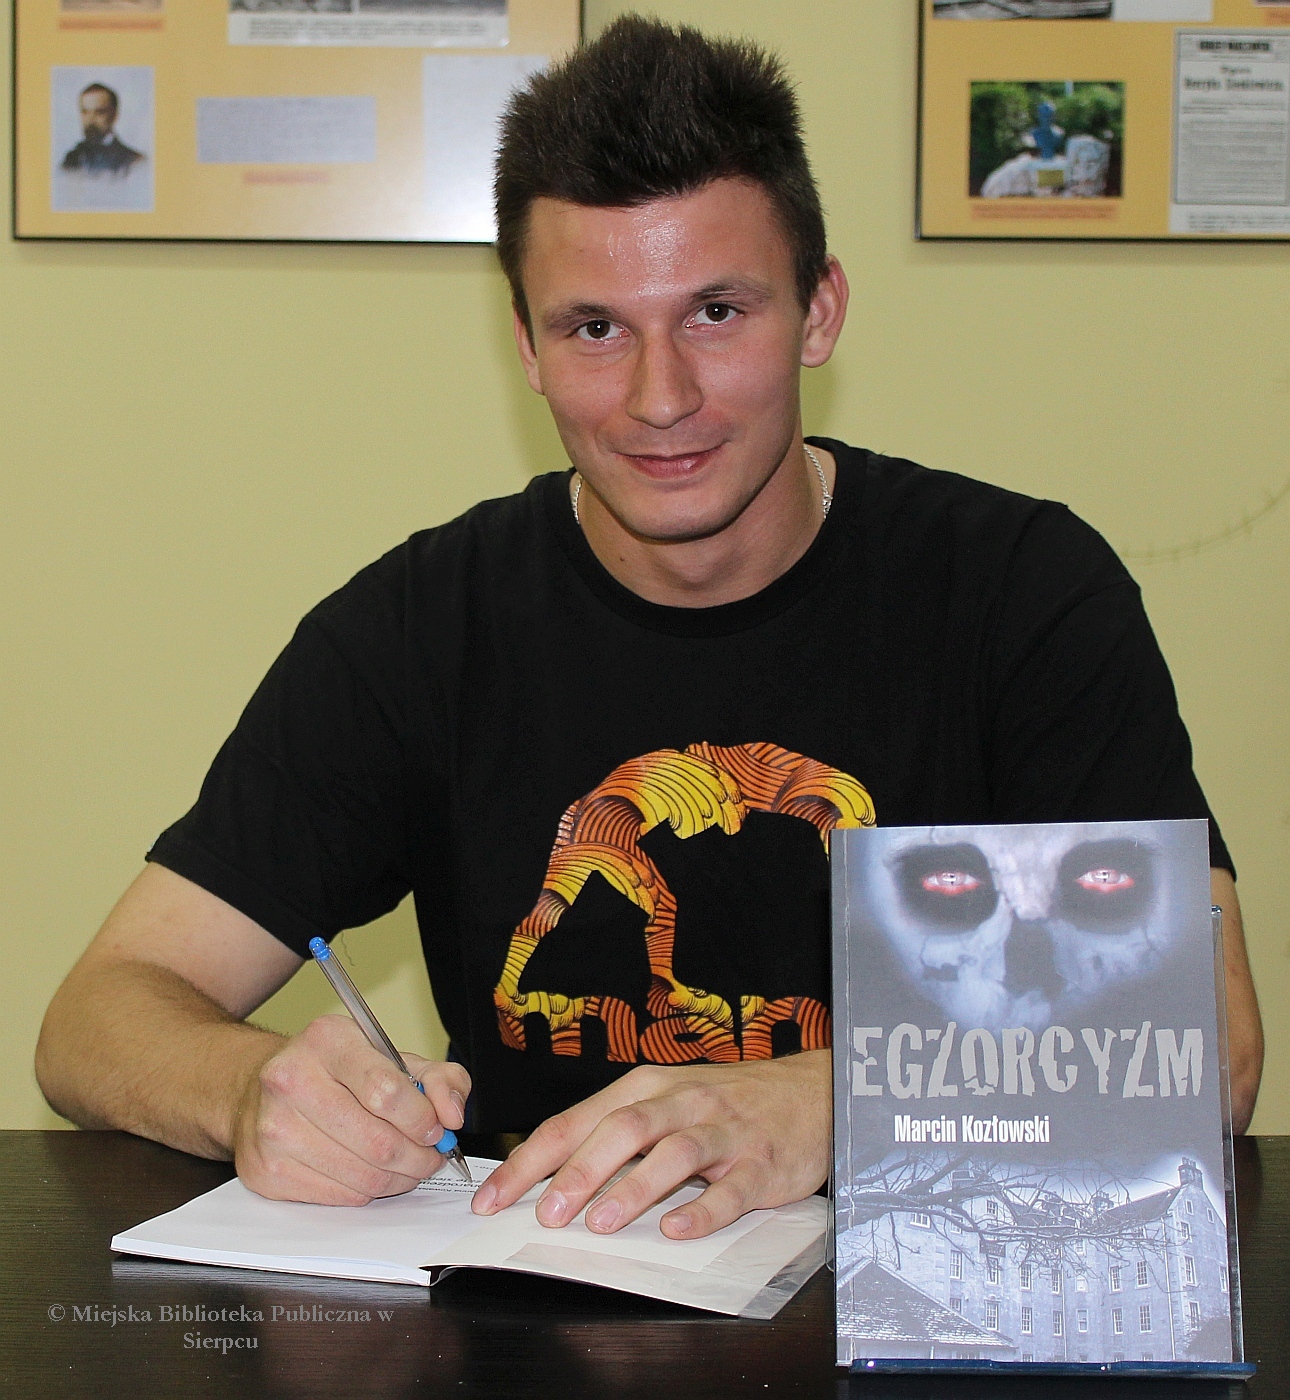 Marcin Kozowski